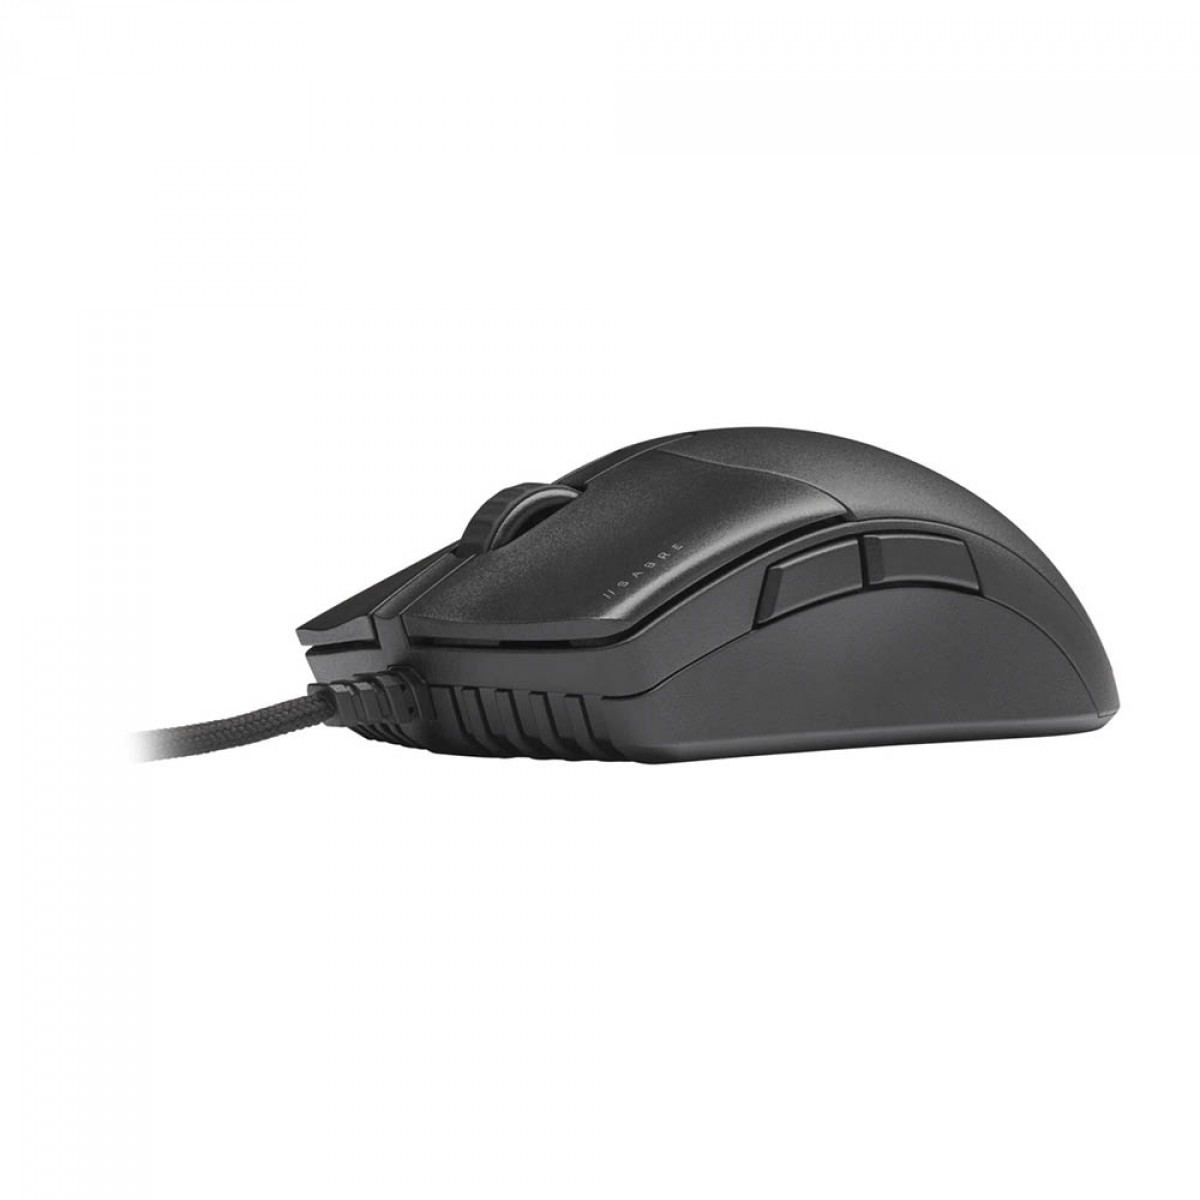 Mouse Gamer Corsair Sabre Pro, 18000 DPI, 6 Botões, Black, CH-9303101-NA